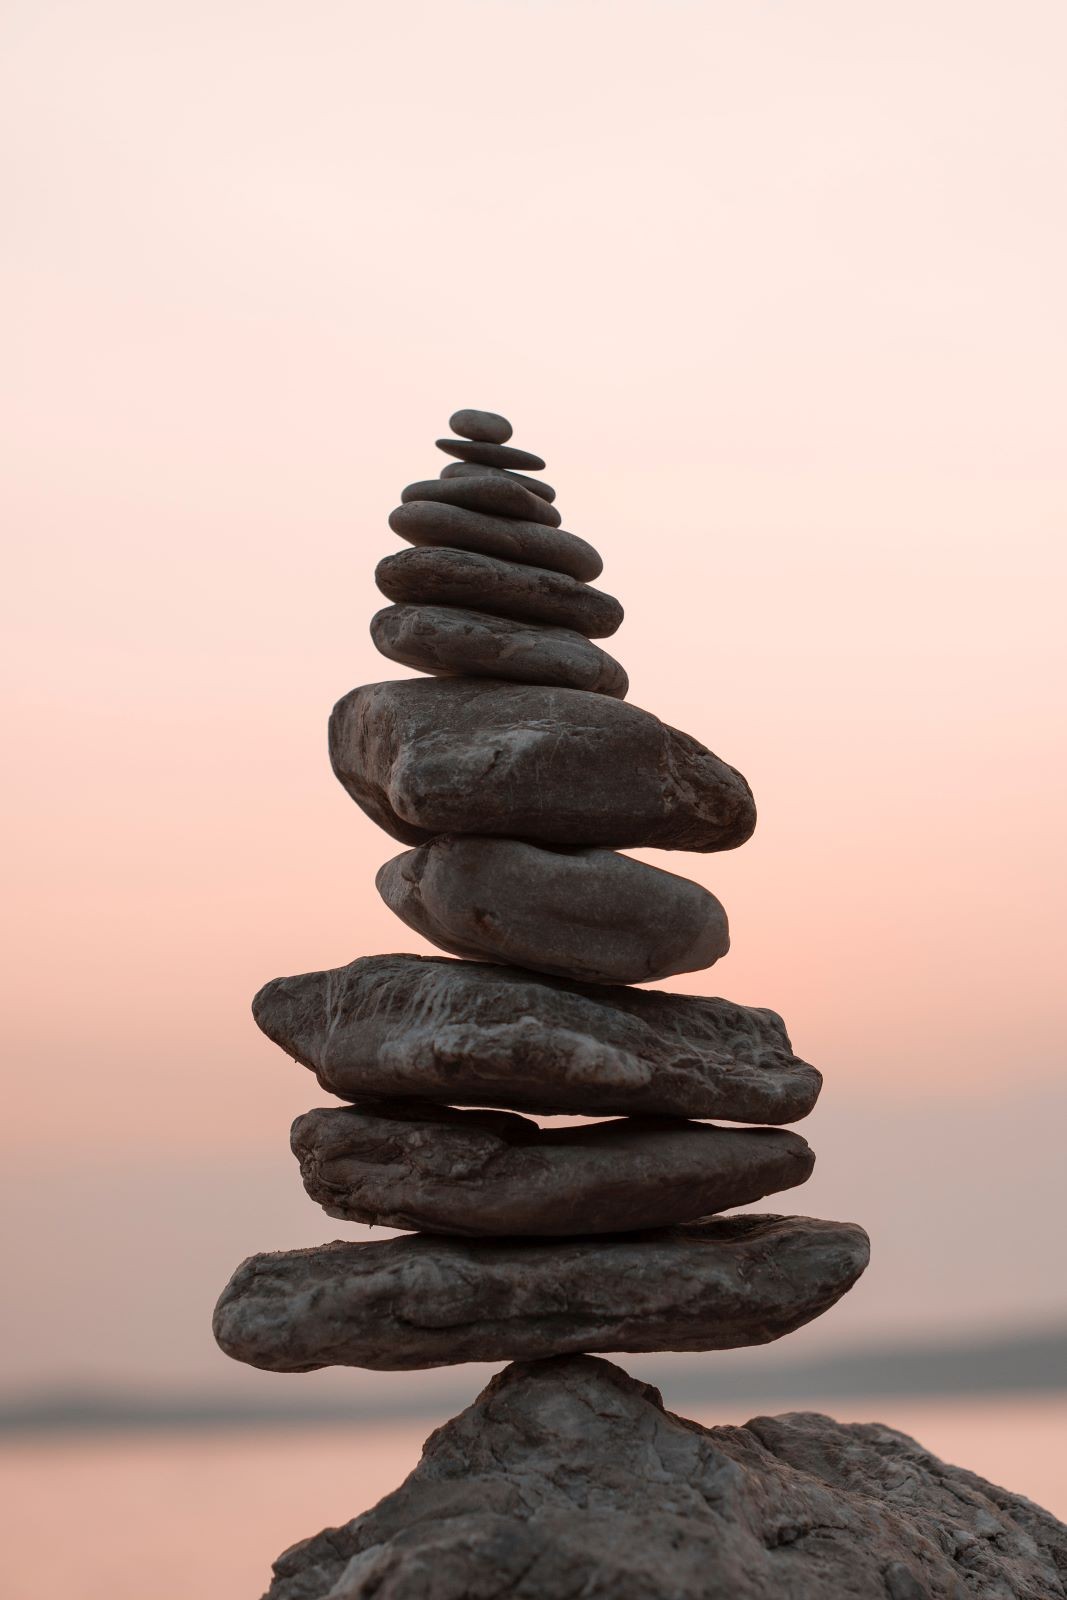 Πέτρες η μια πάνω στην άλλη που συμβολίζουν την απολυτη ισορροπία